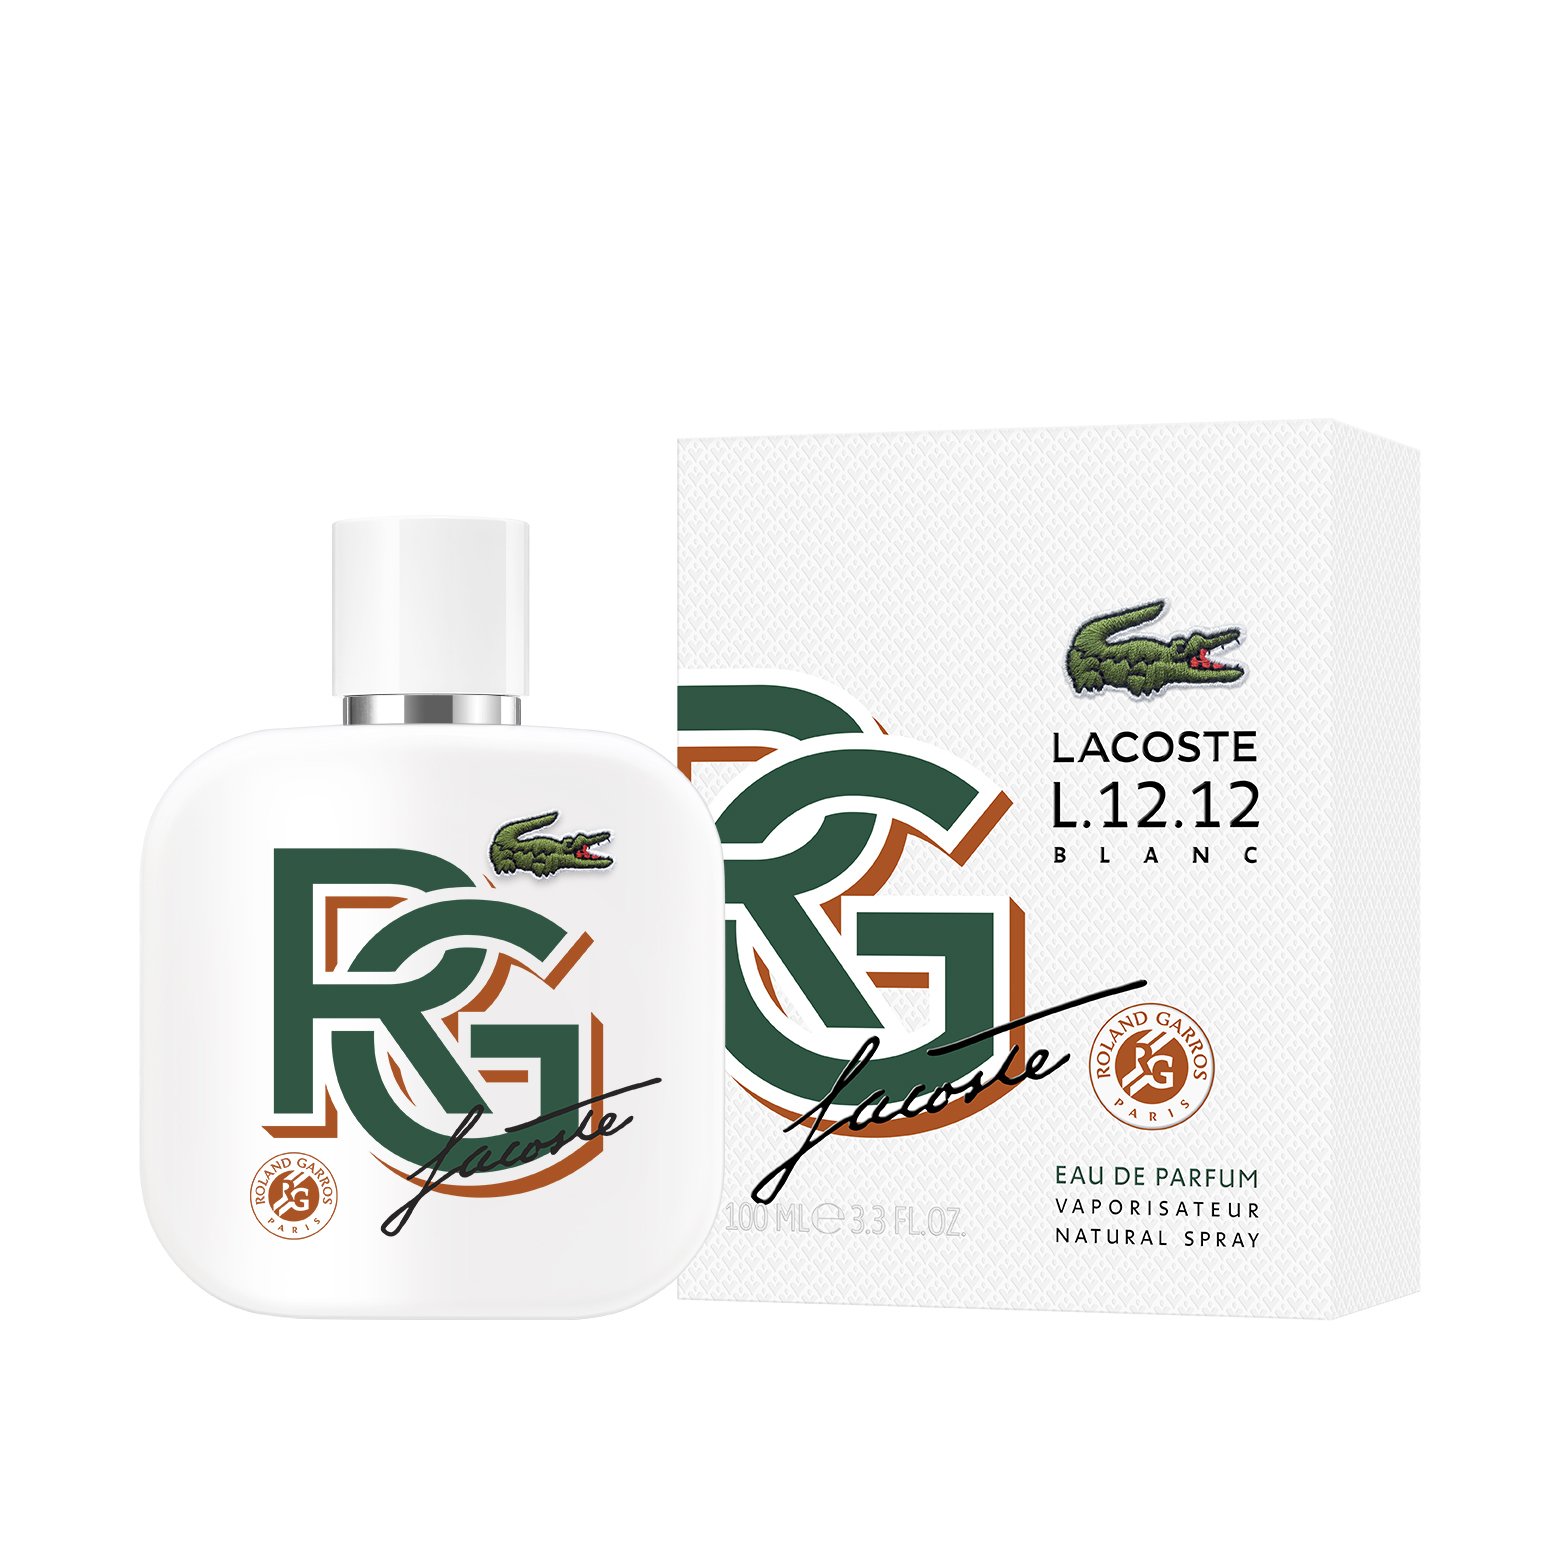 kedel Diligence amplitude L.12.12. official Roland-Garros fragrance - 100 ml | Roland-Garros Store